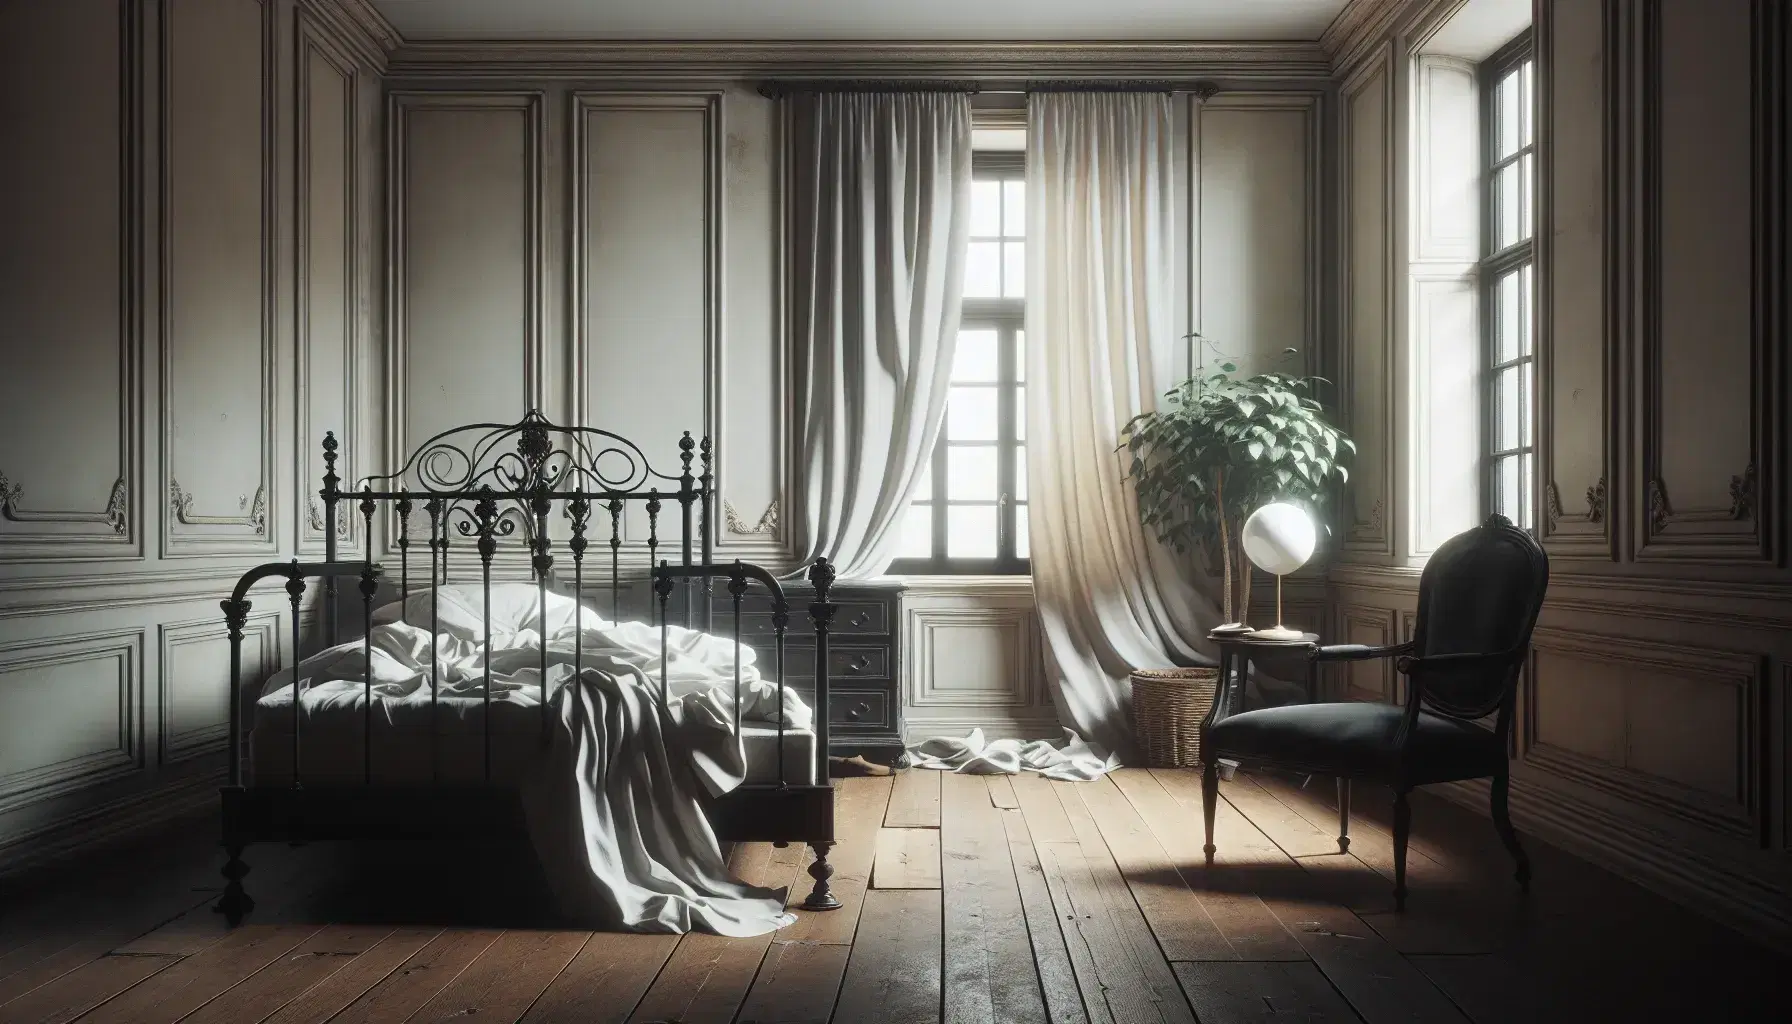 Habitación antigua con cama de hierro negro, sábanas blancas desordenadas, mesita de noche con lámpara, ventana con cortinas semiabiertas y silla de madera con chaqueta oscura.